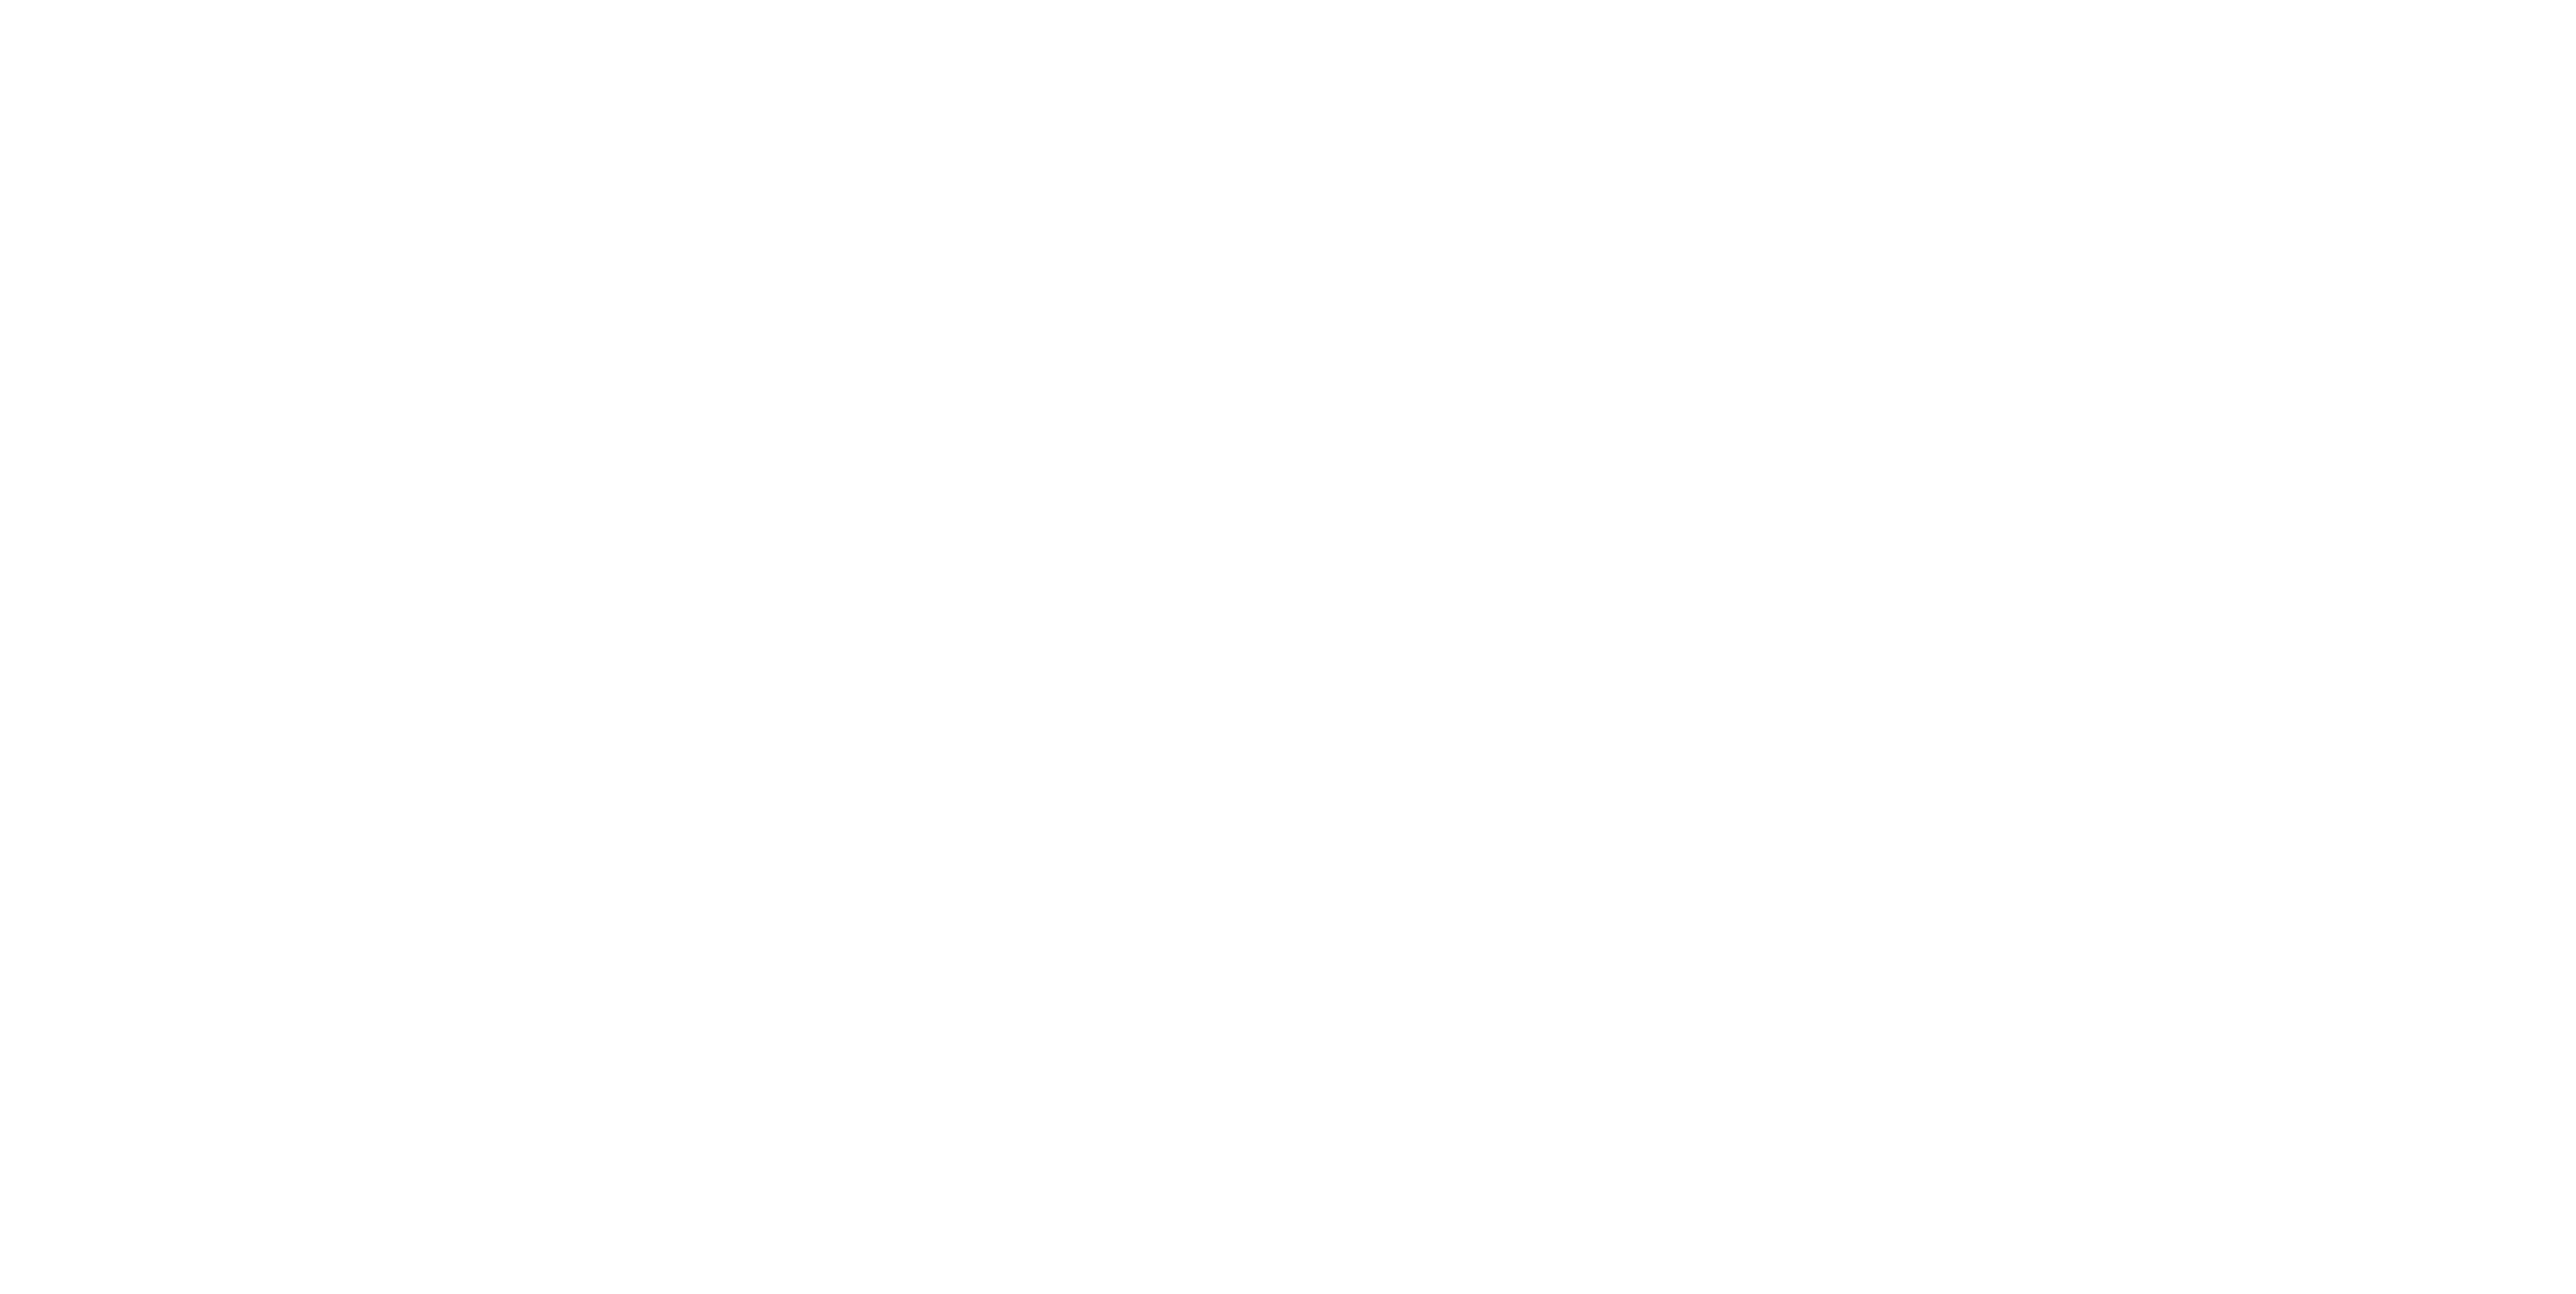 Promociones inmobiliarias AEDAS HOMES